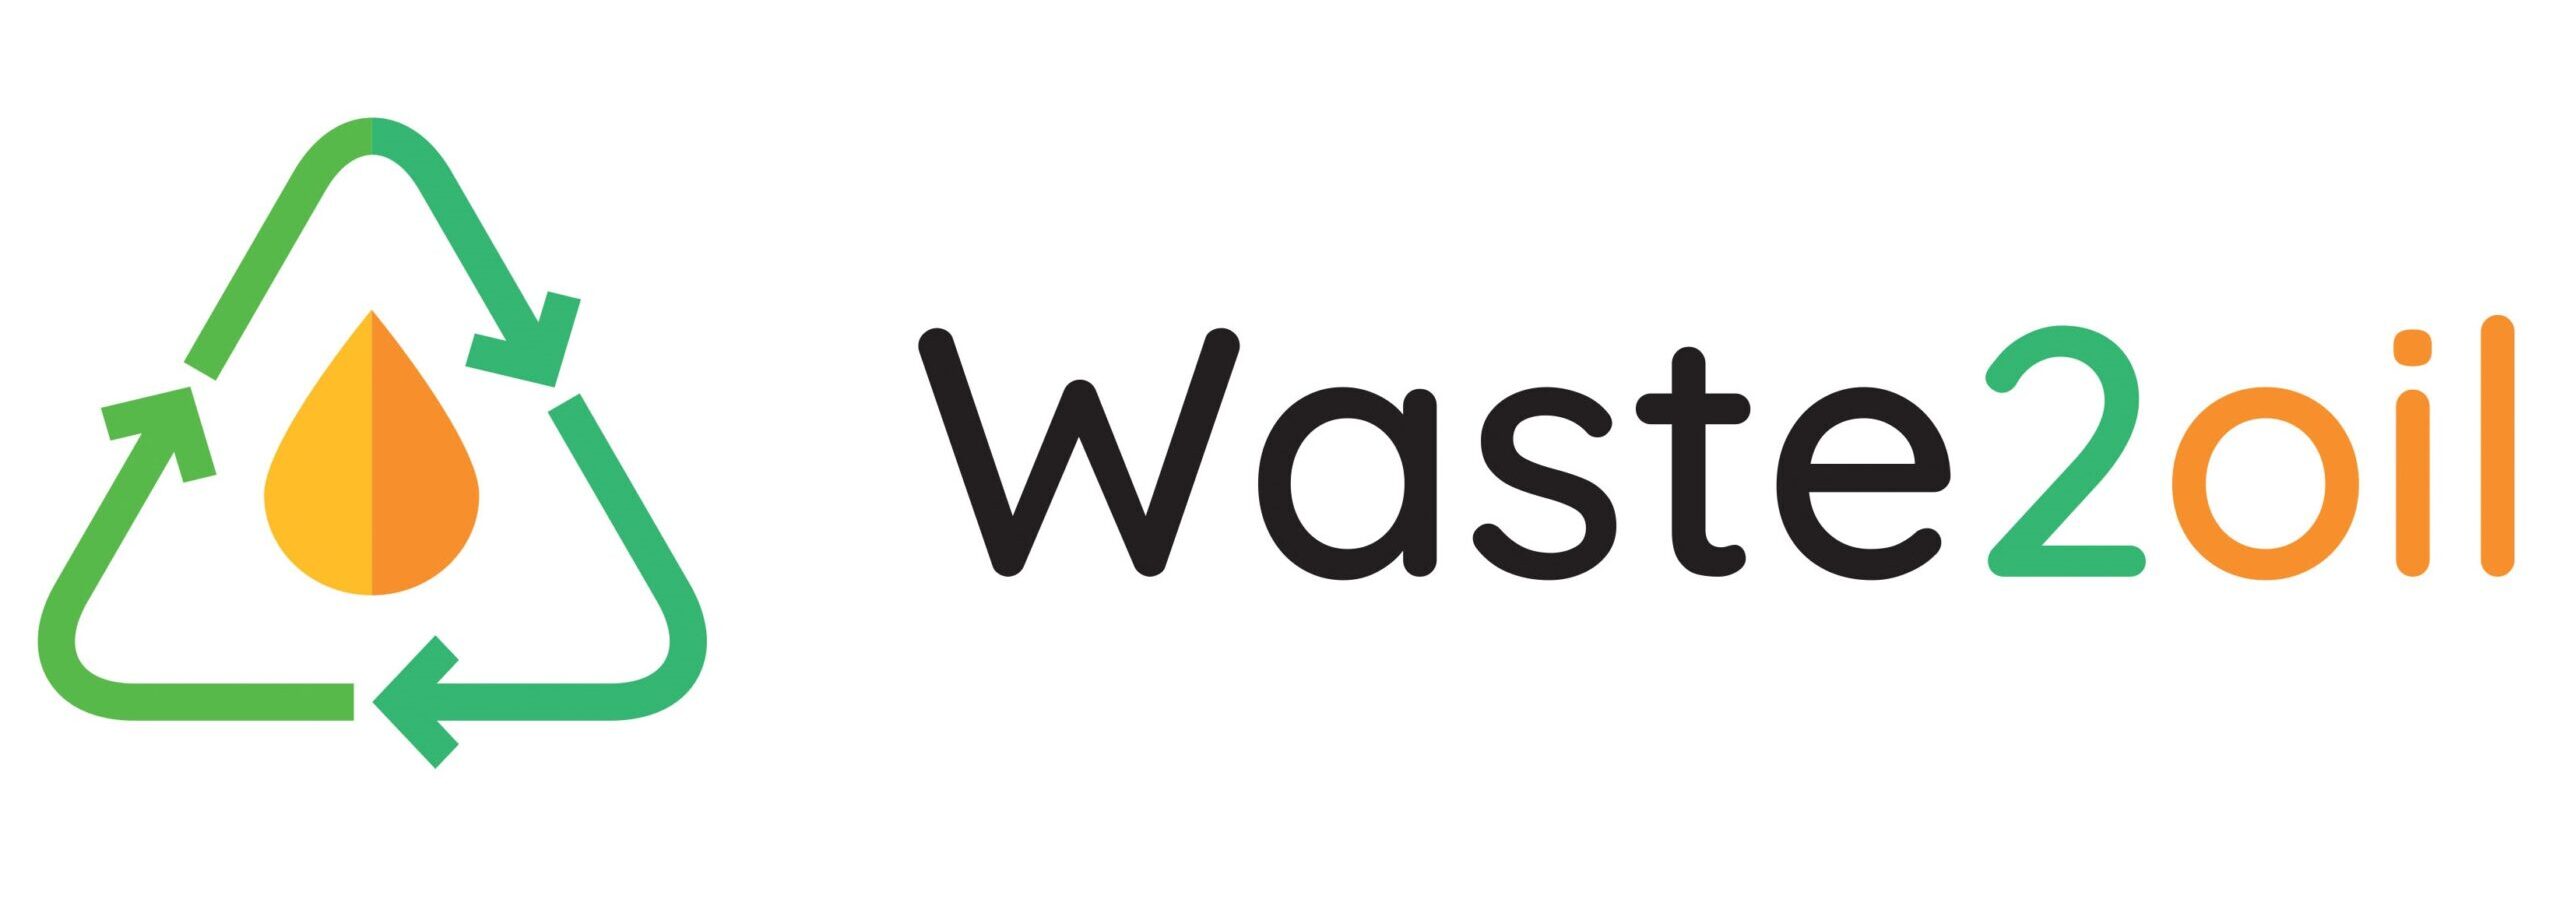 Waste2oil